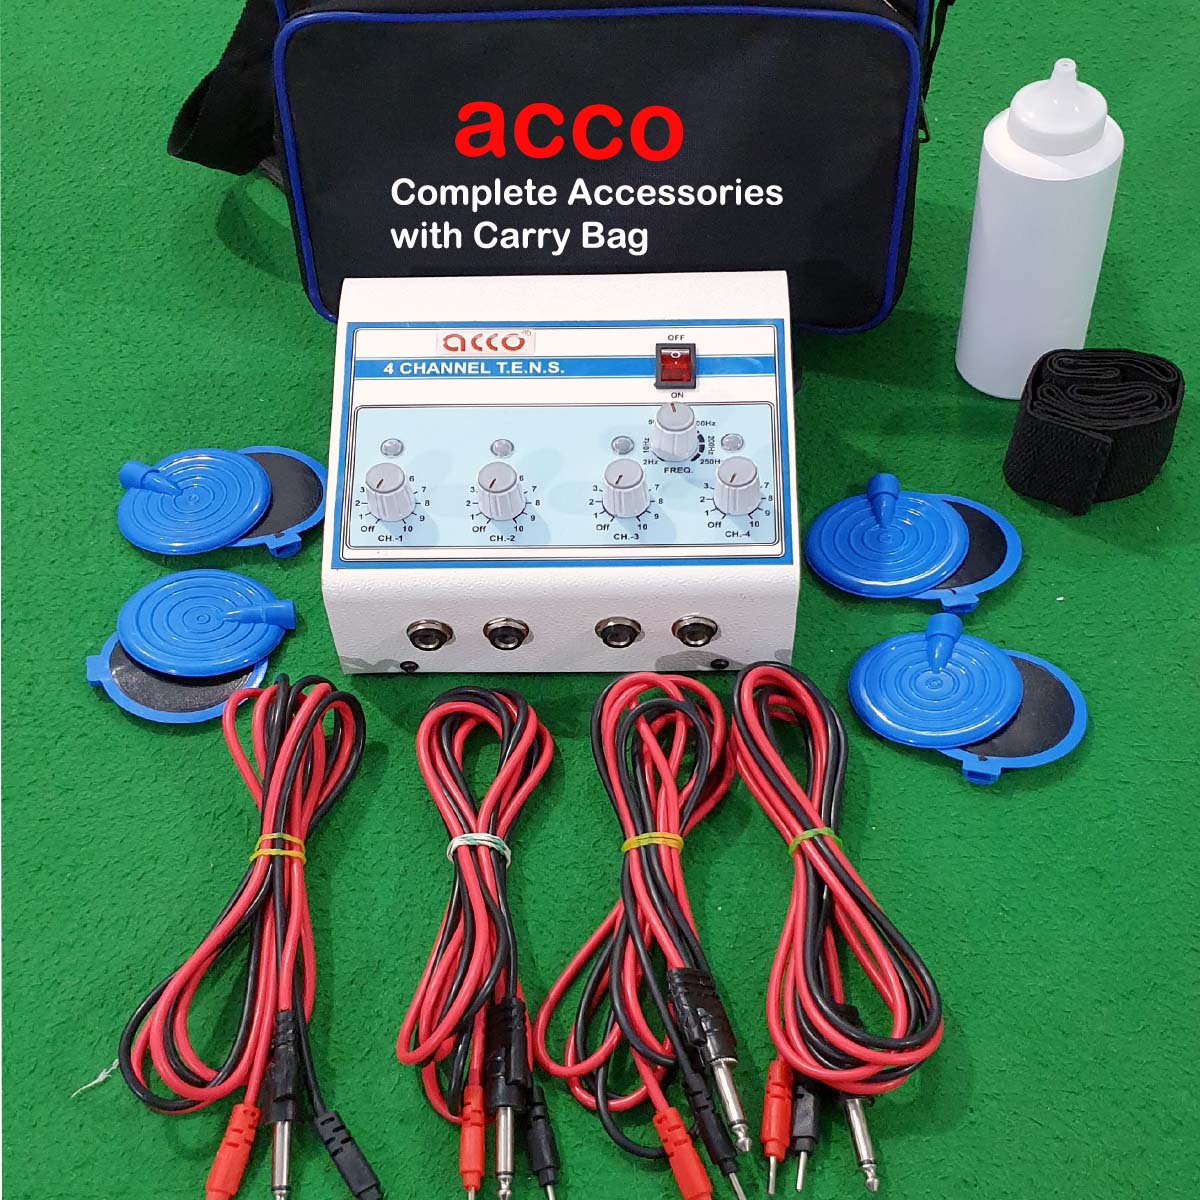 acco Portable Tens Machine 4ch